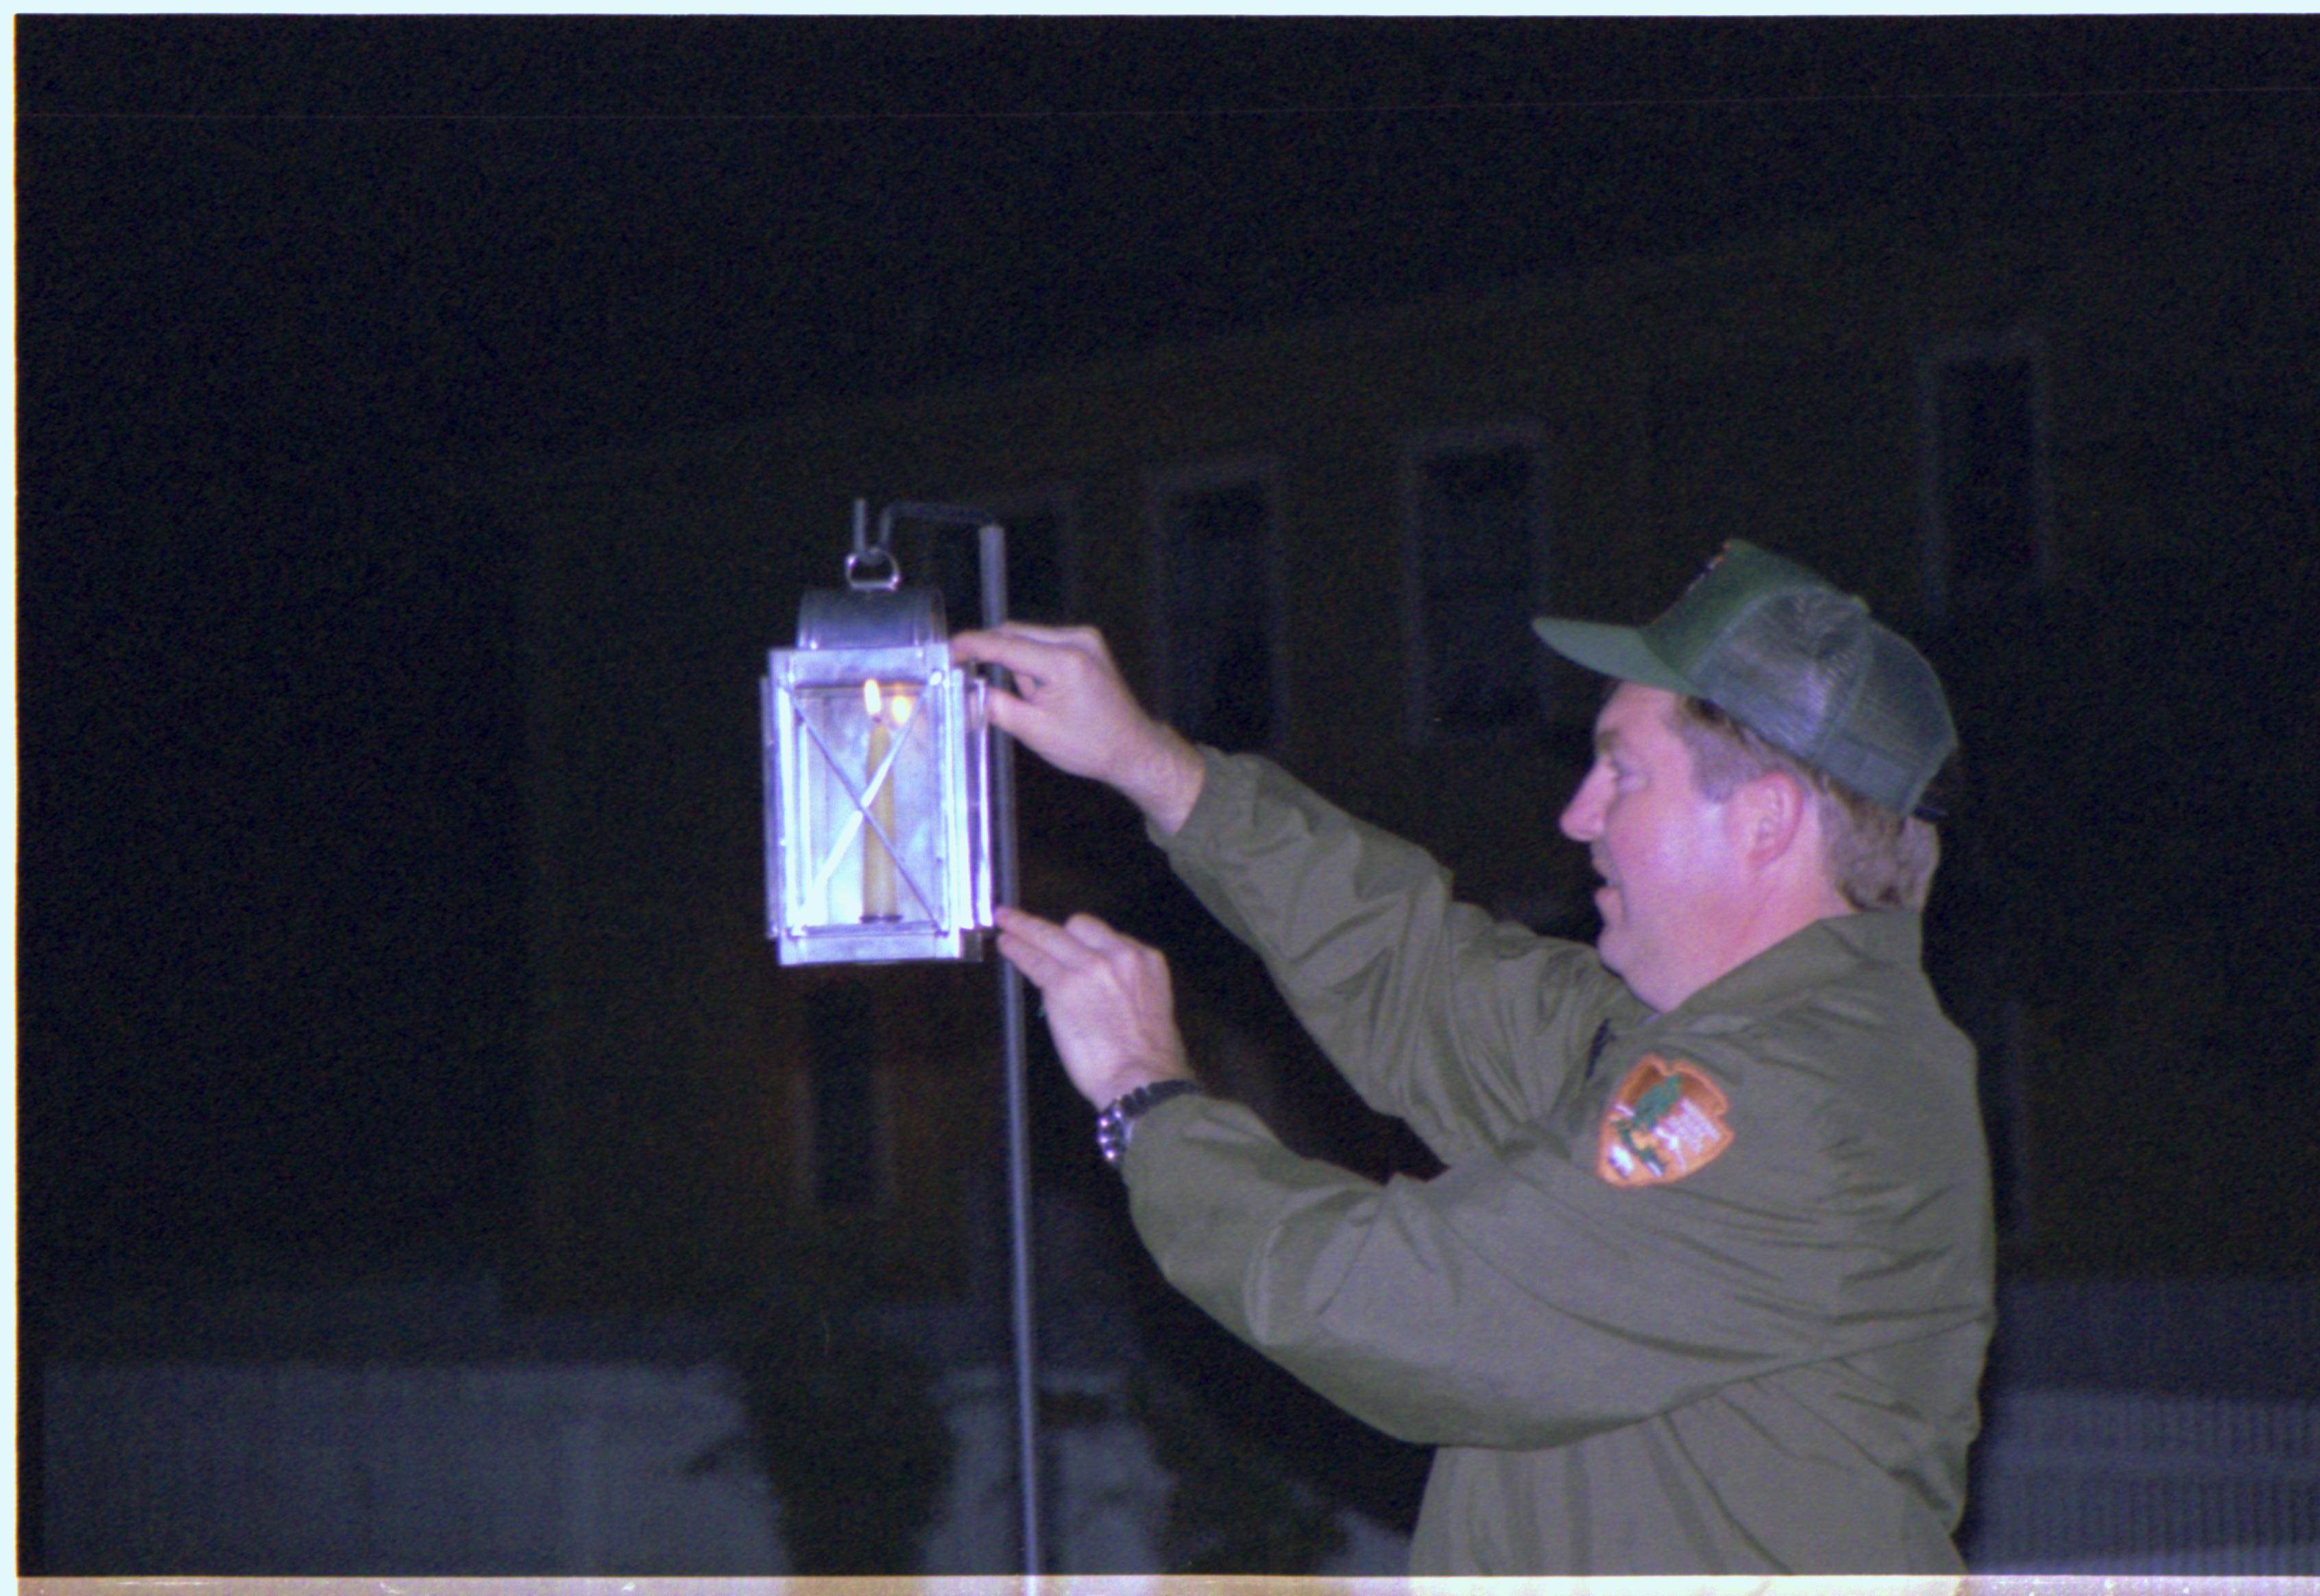 Man closing lantern. Candle lighting